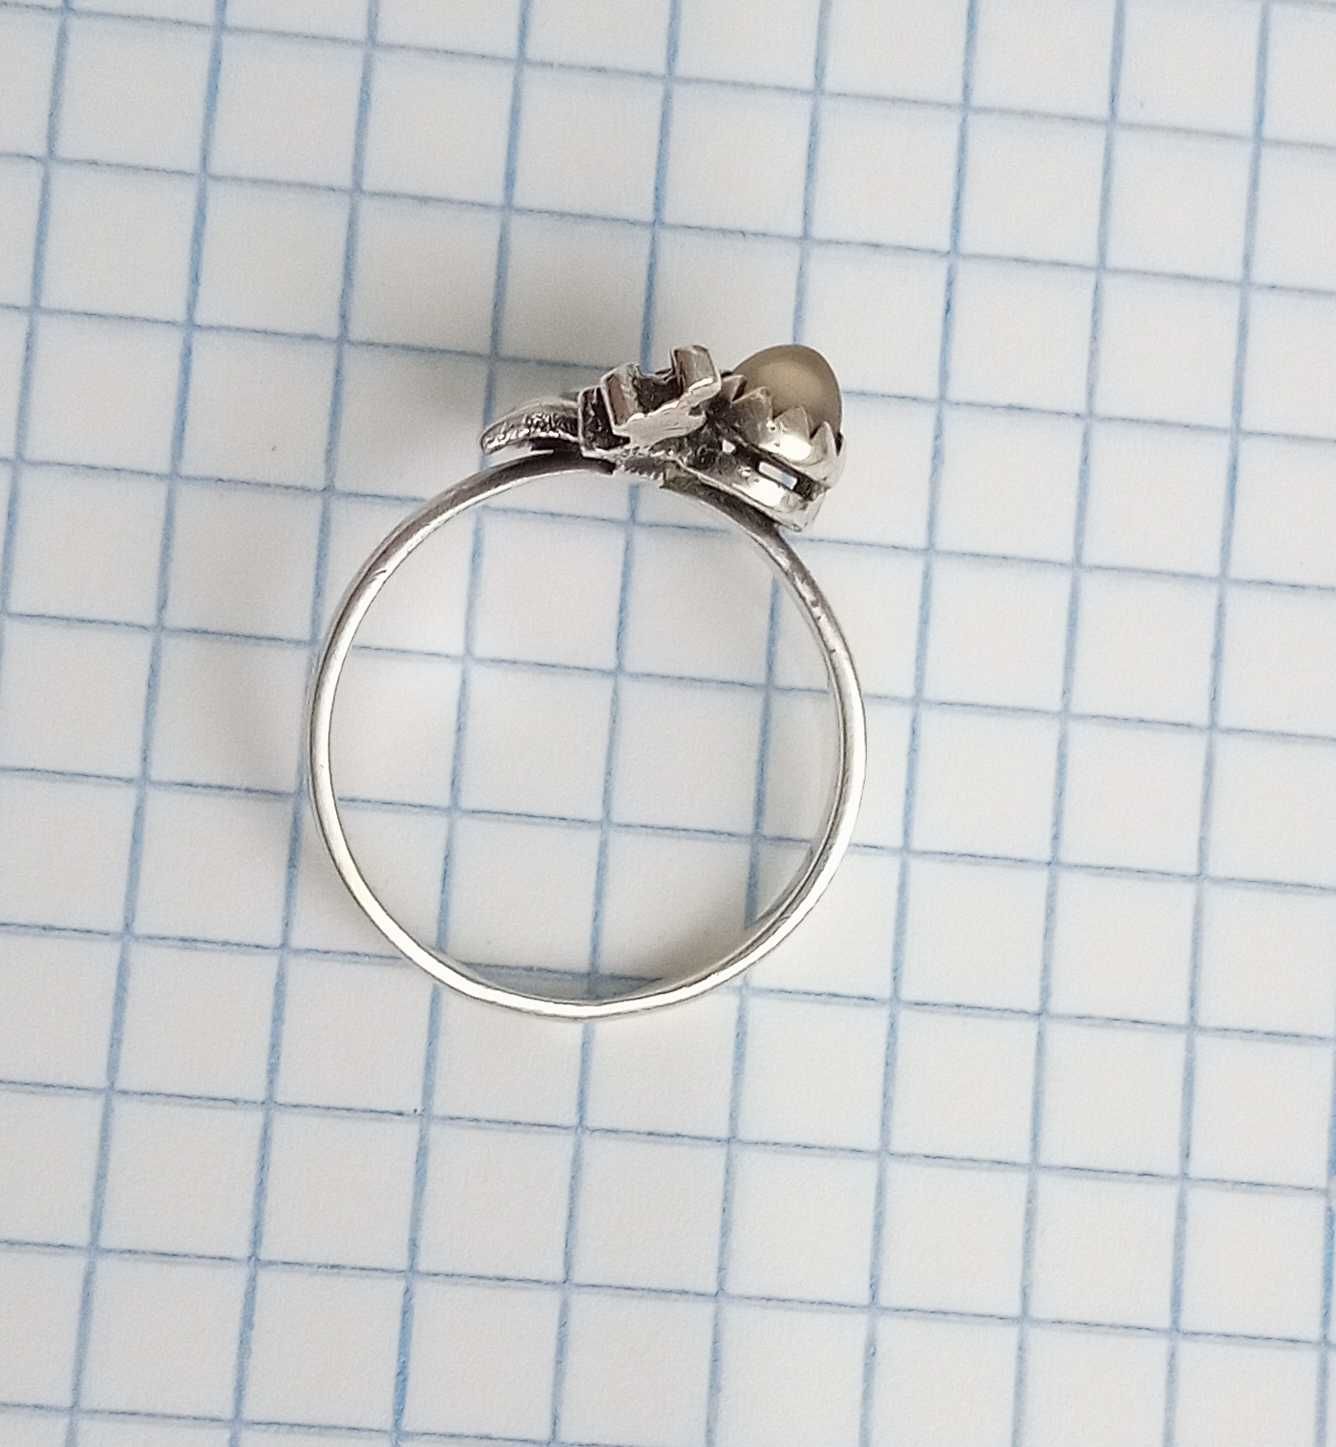 Колечко кольцо с камнем сердолик. Серебро 5СЮ, *875 проба. СССР